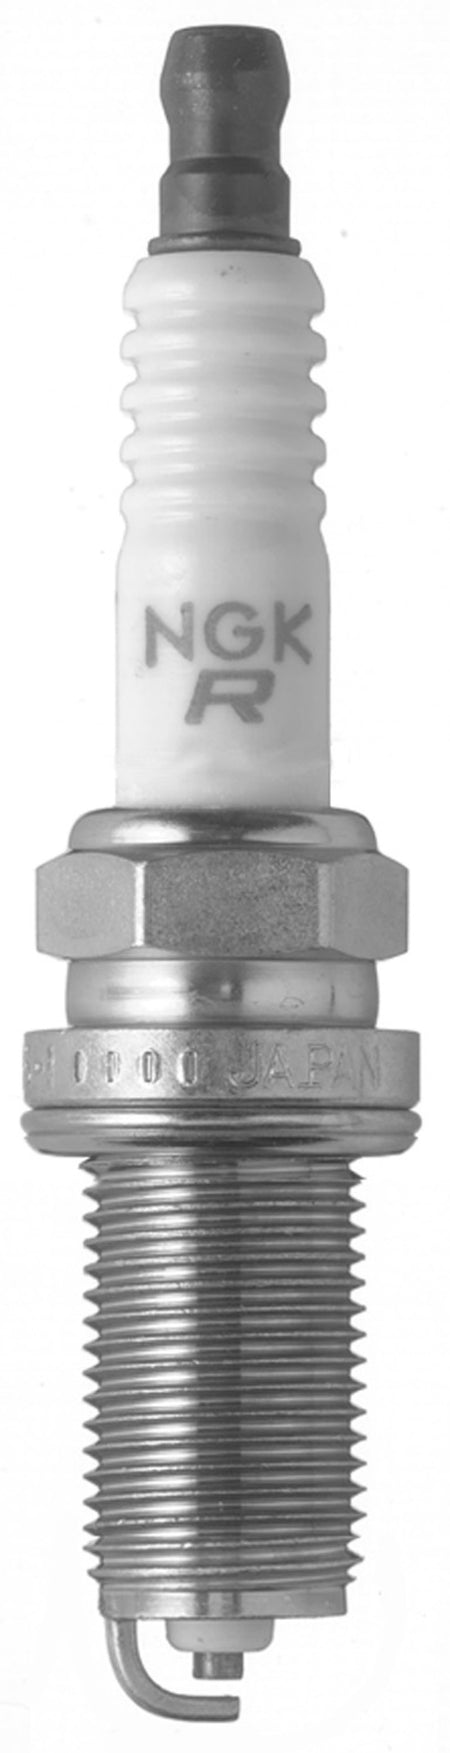 NGK Nickel Spark Plug Box of 4 (LFR6A-11)